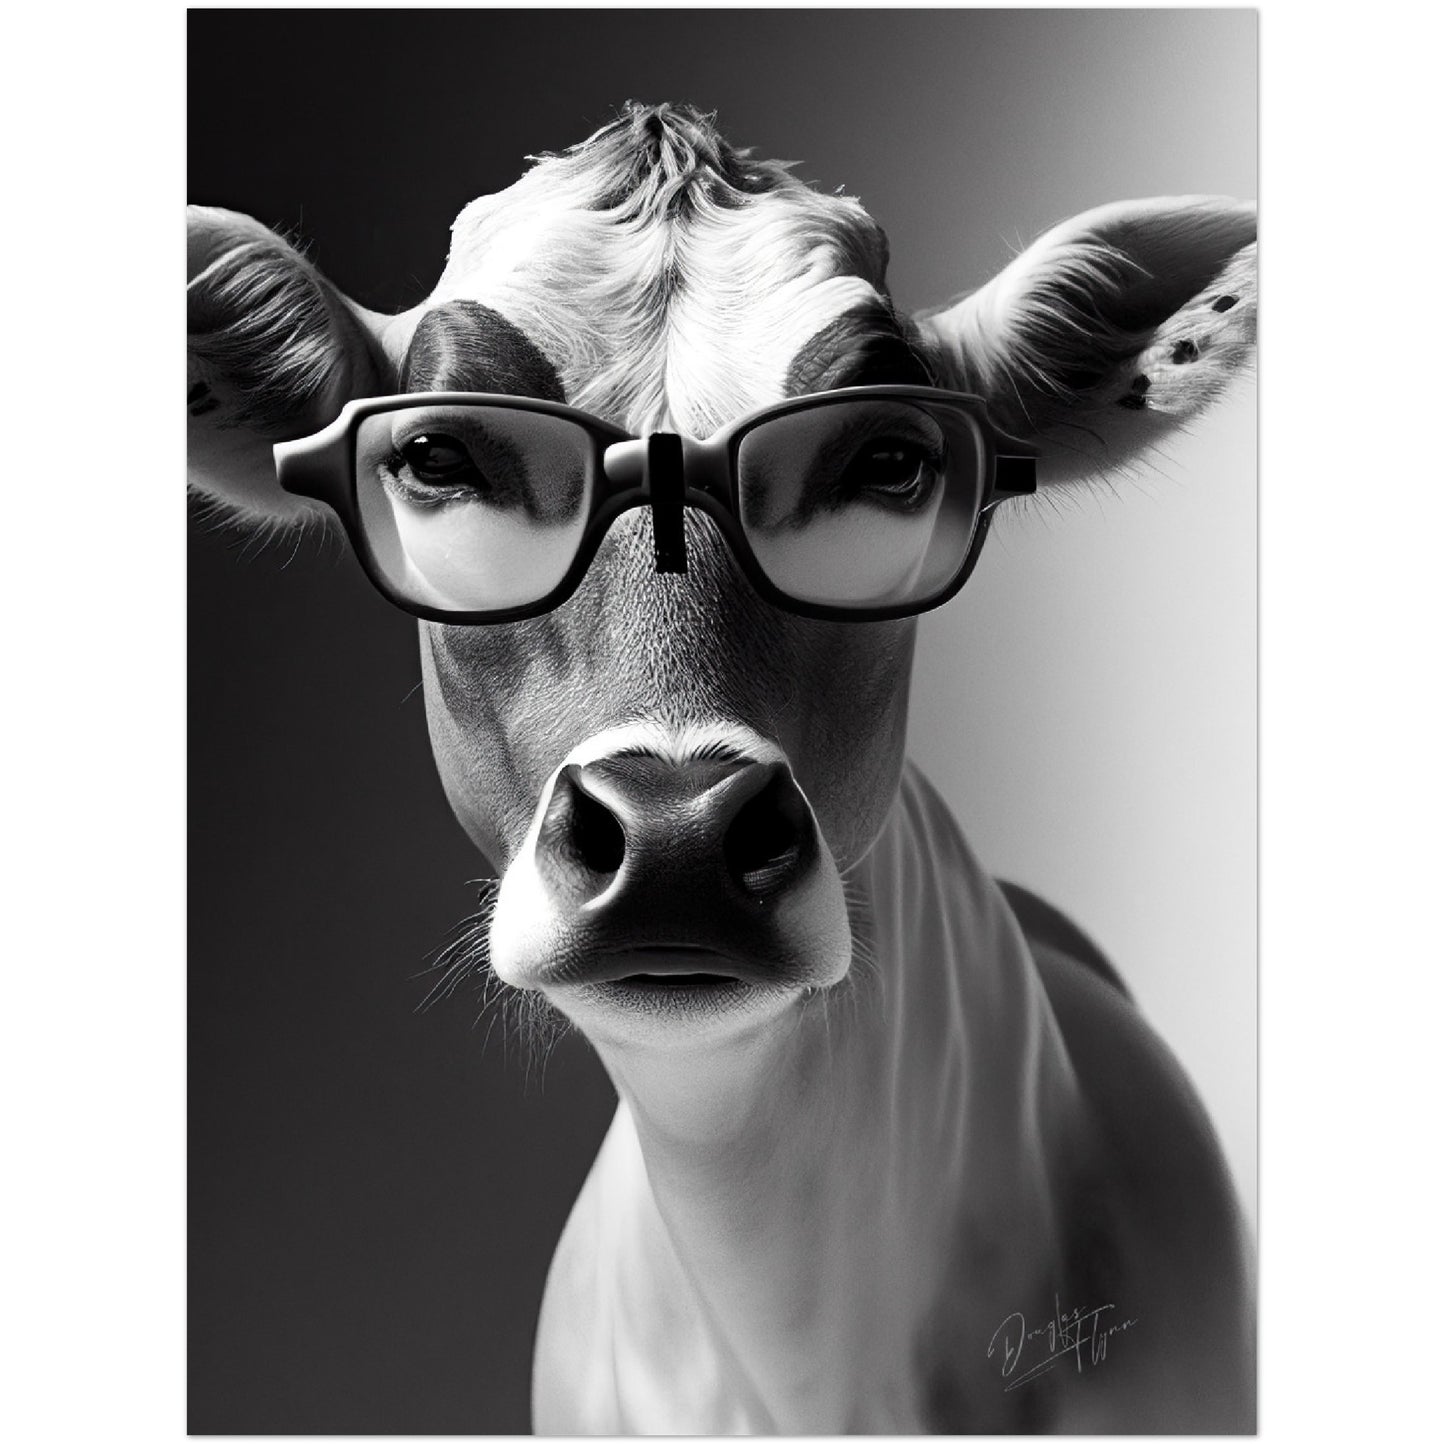 »Brainy Baby Cow« retro poster